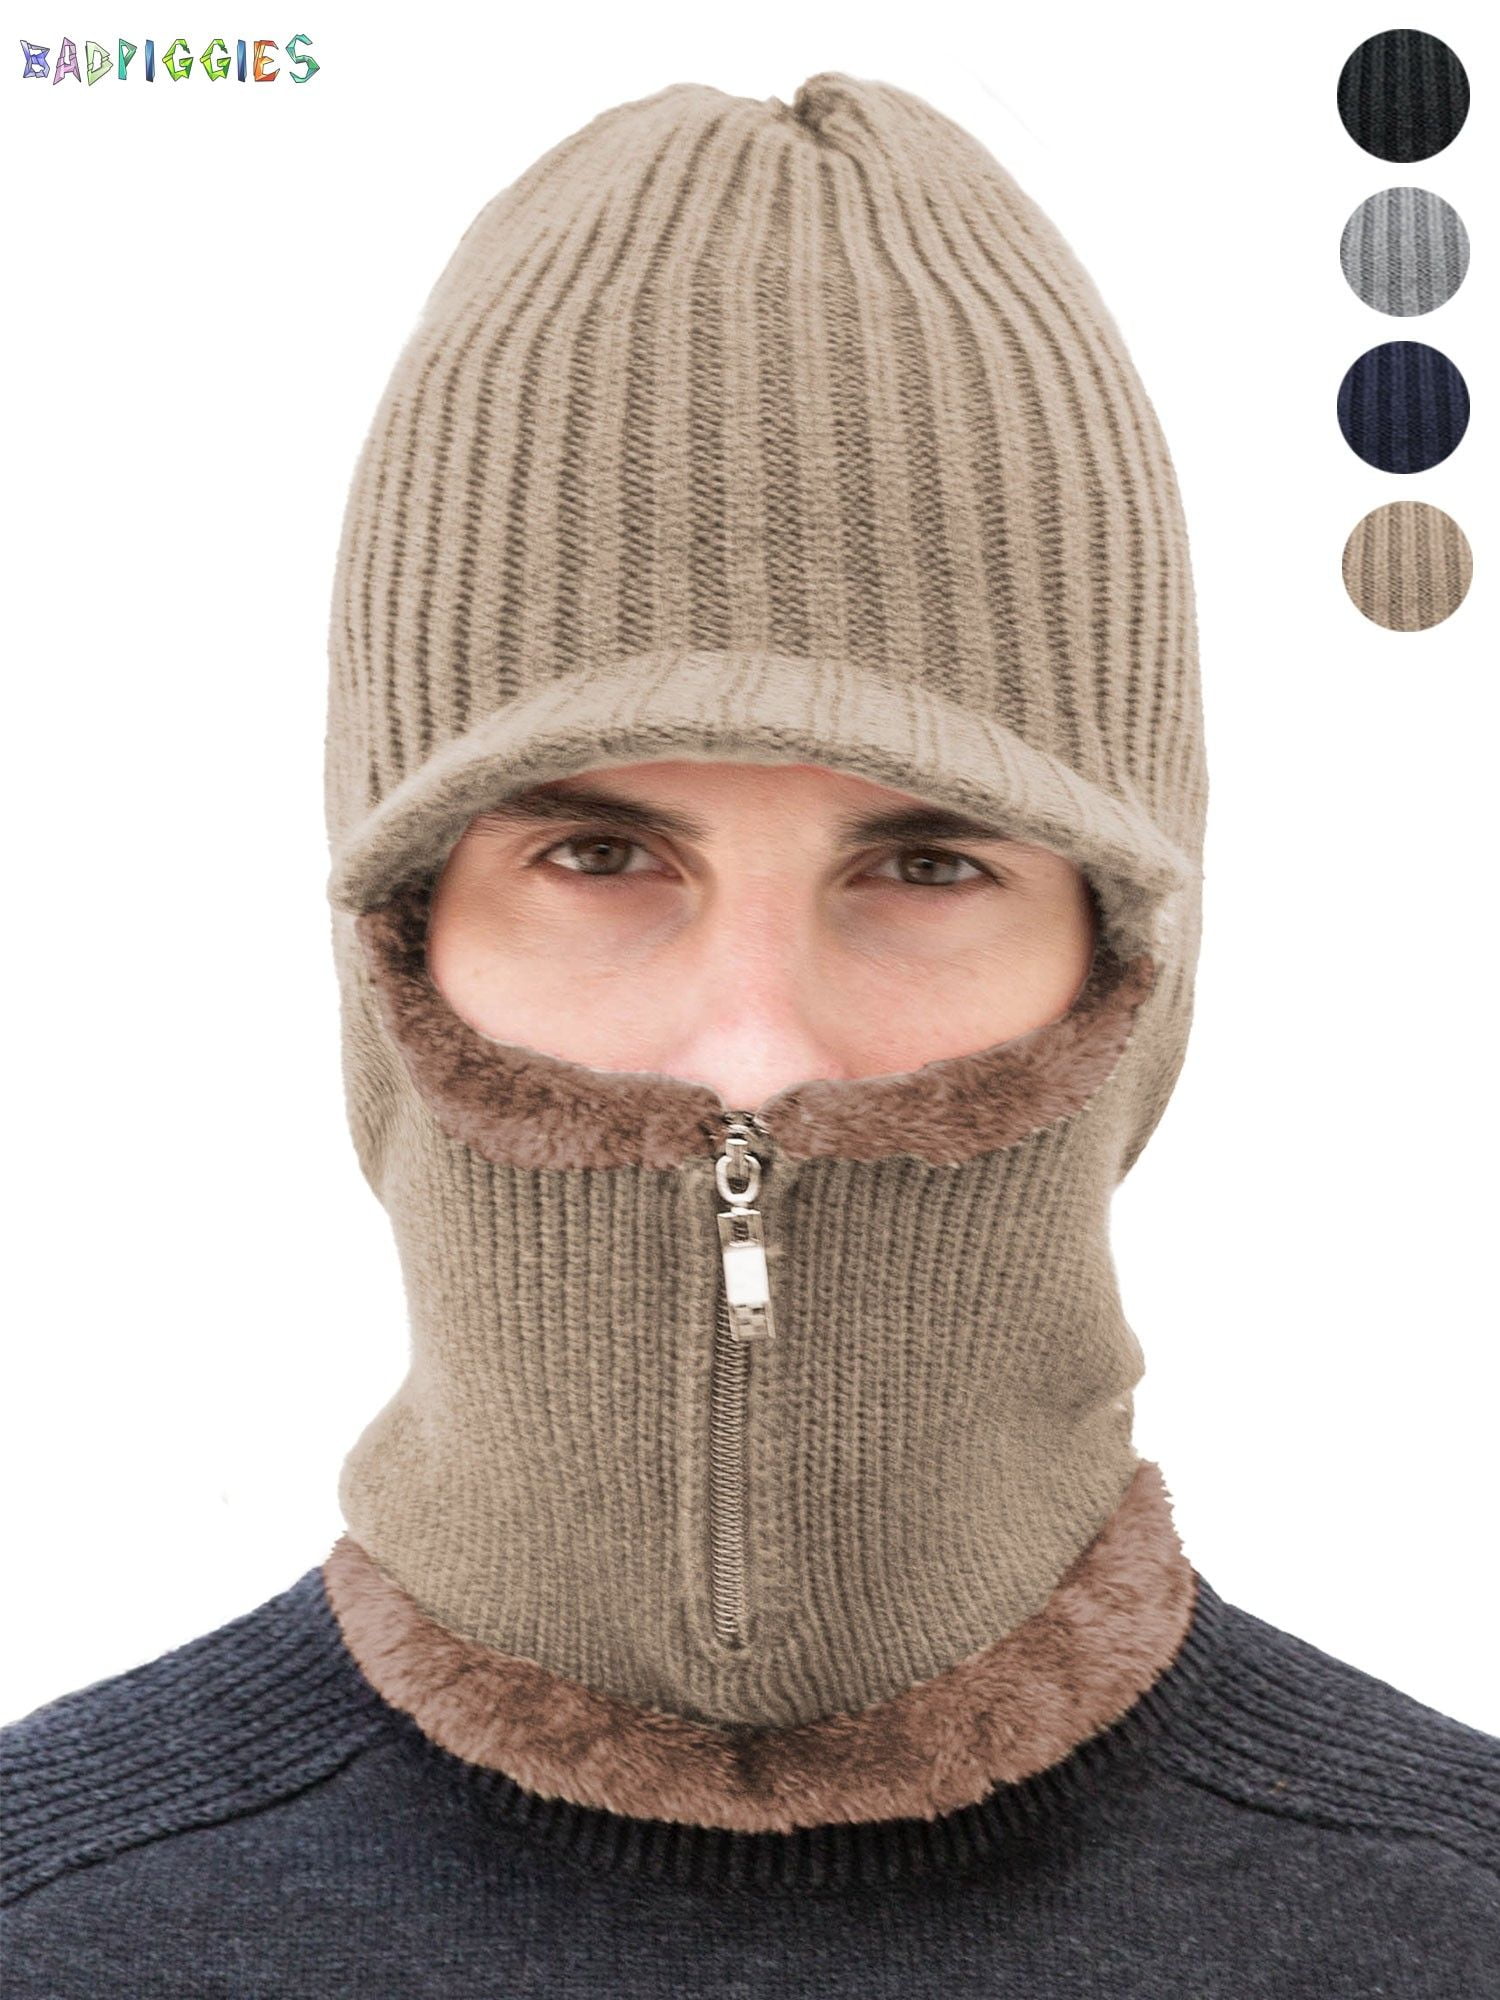 Balaclava Full Face Mask Neck Warmer Winter Snow Sports Ski Snowboard Scarf Hats 